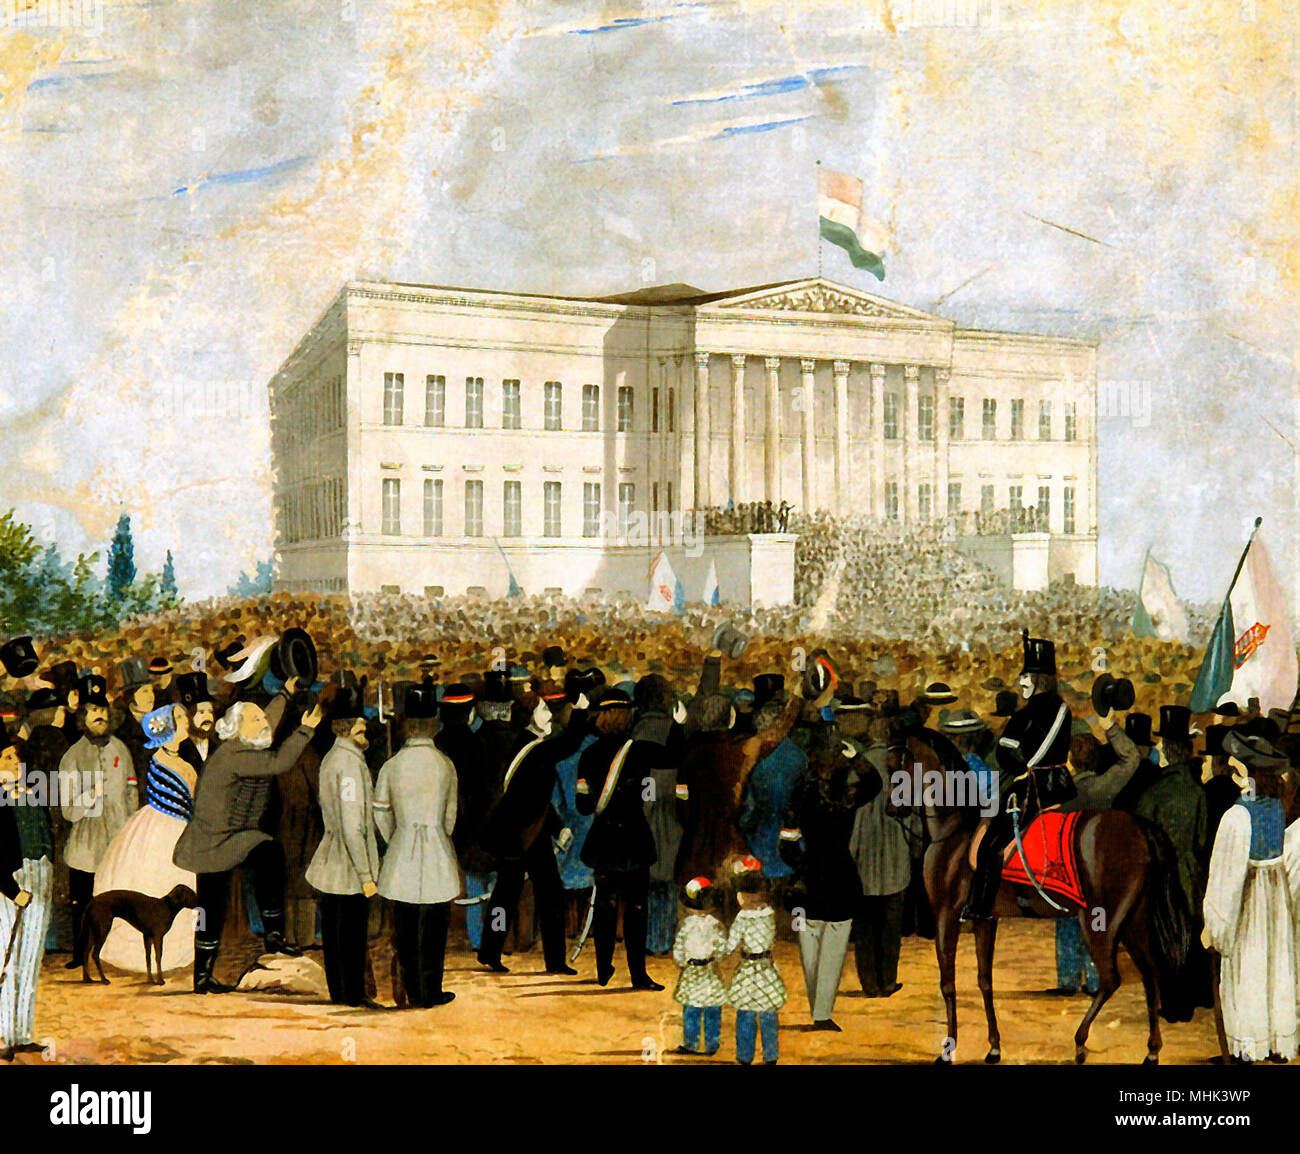 Petofi Sandor appelle la chanson nationale sur l'escalier du Musée National. 15 mars 1848 aquarelle d'un artiste inconnu Banque D'Images